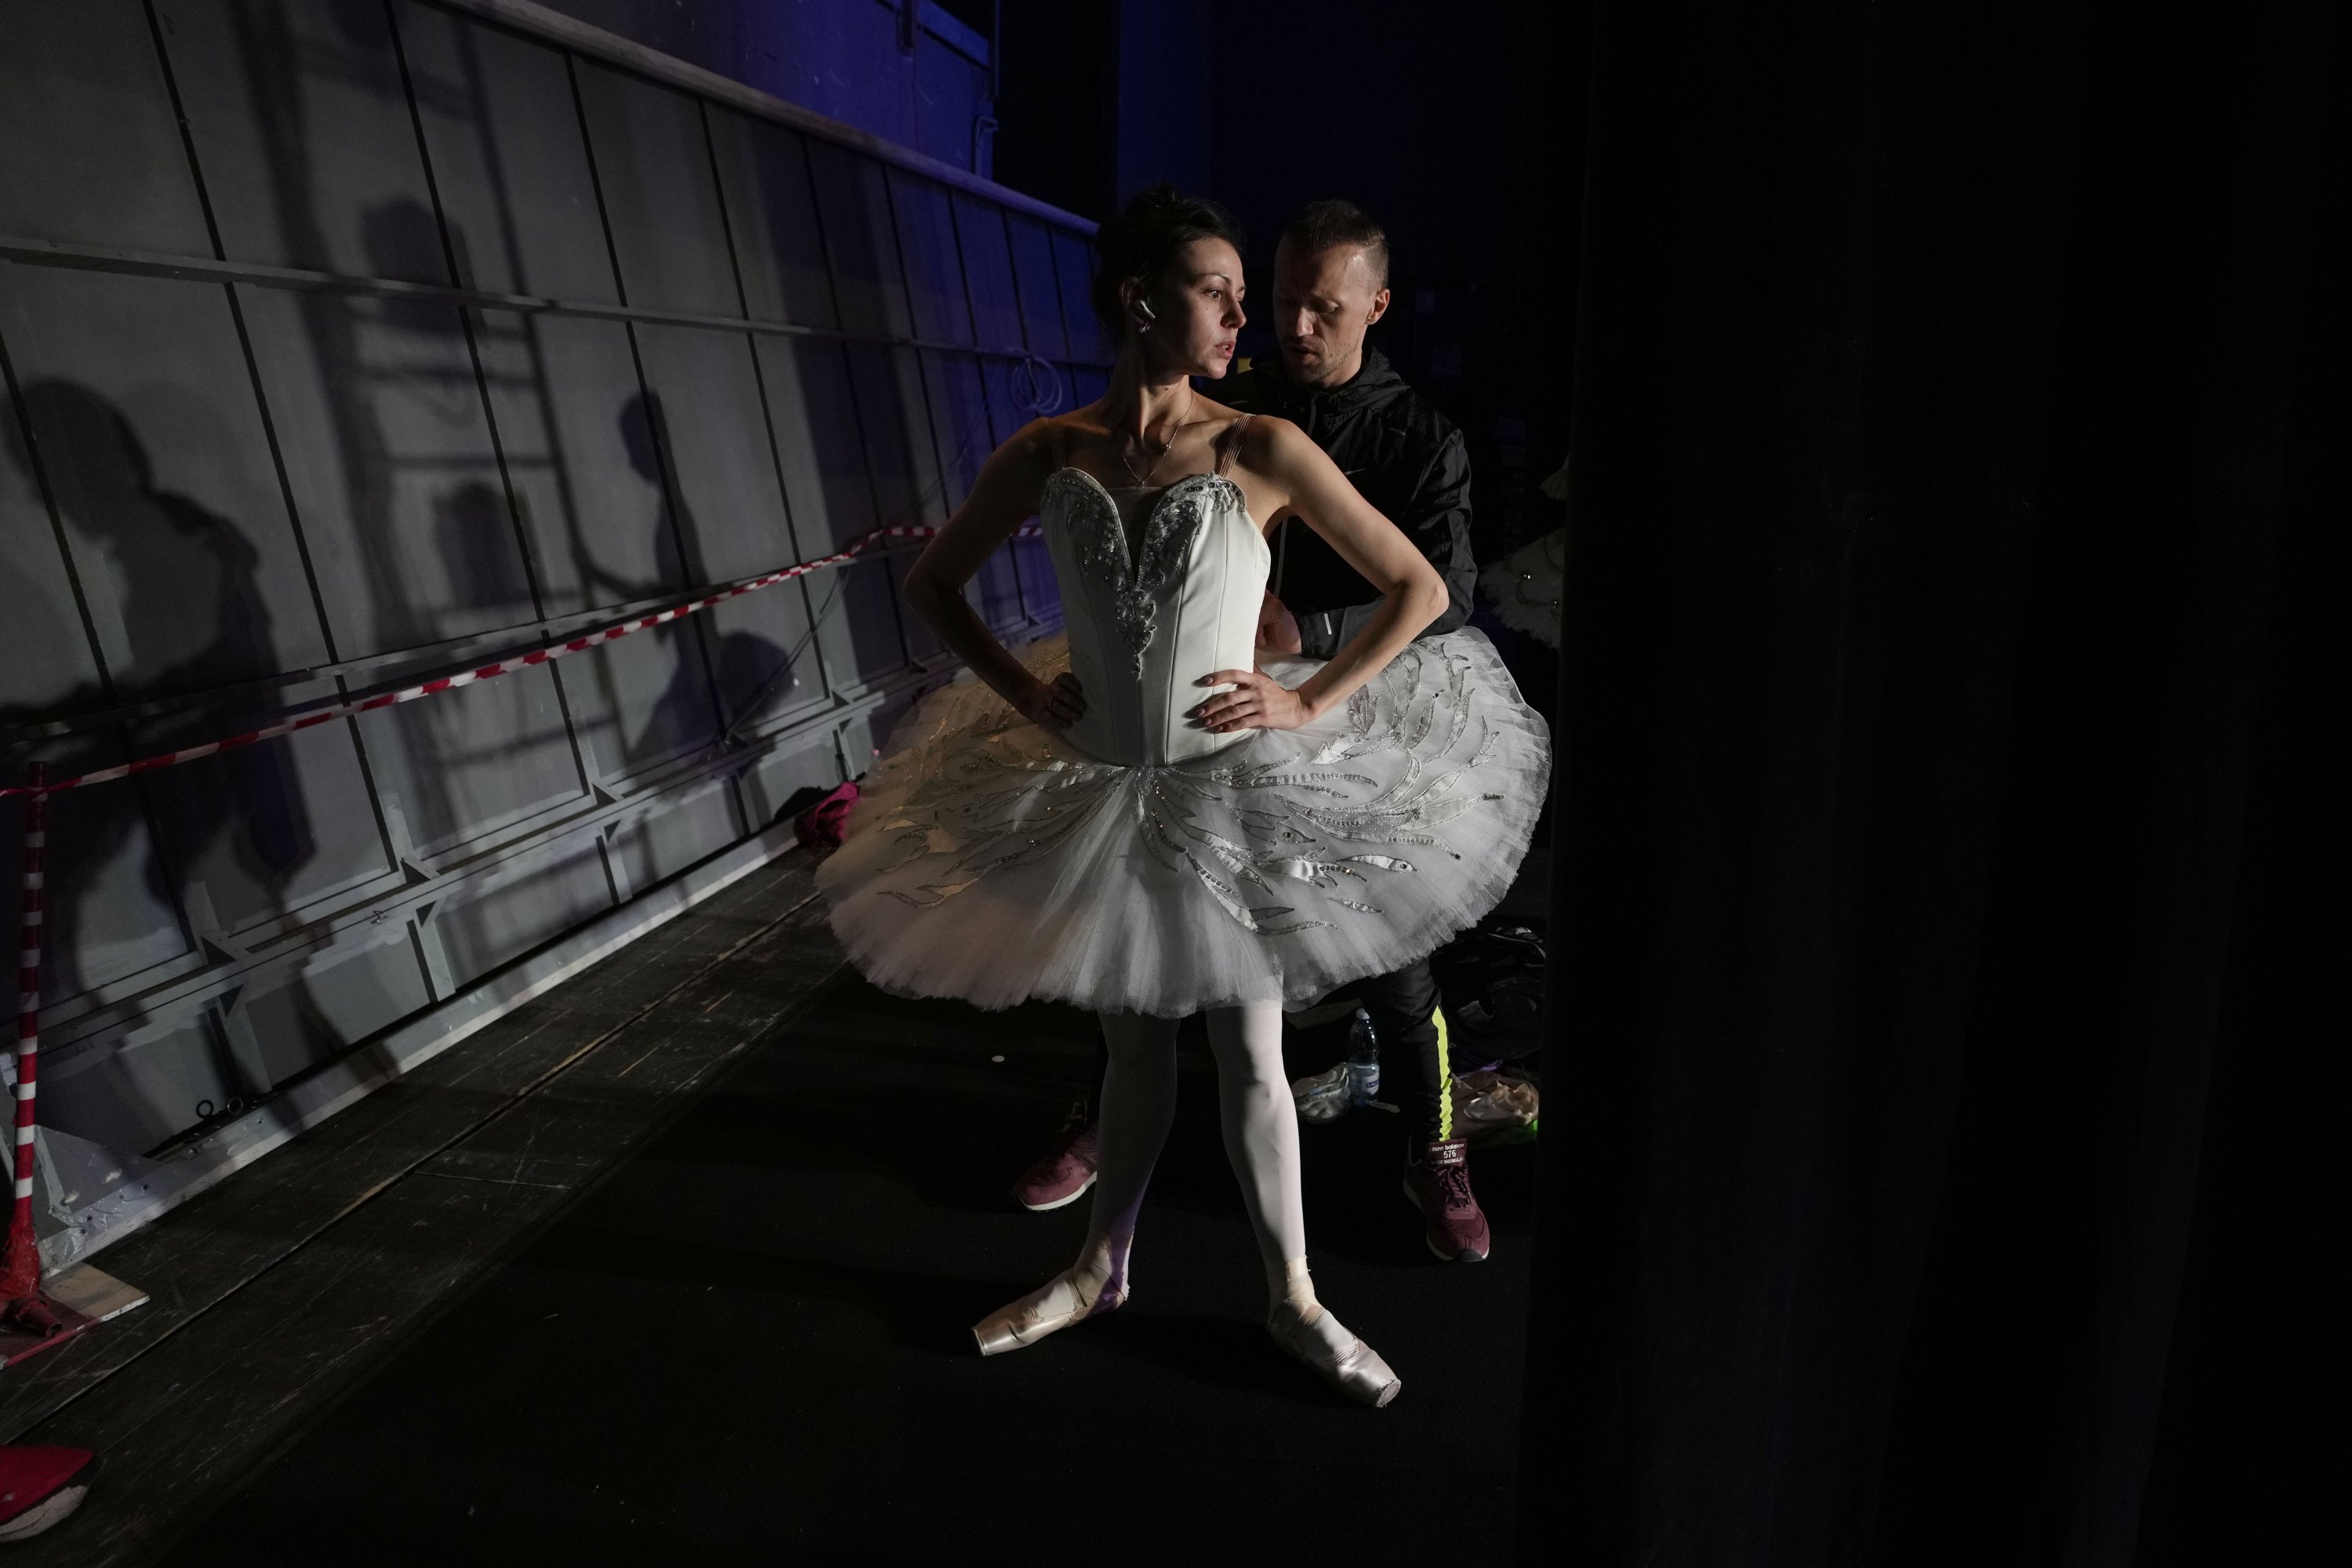 Ukrainian Russian Ballerinas Dance Together In Benefit Performance